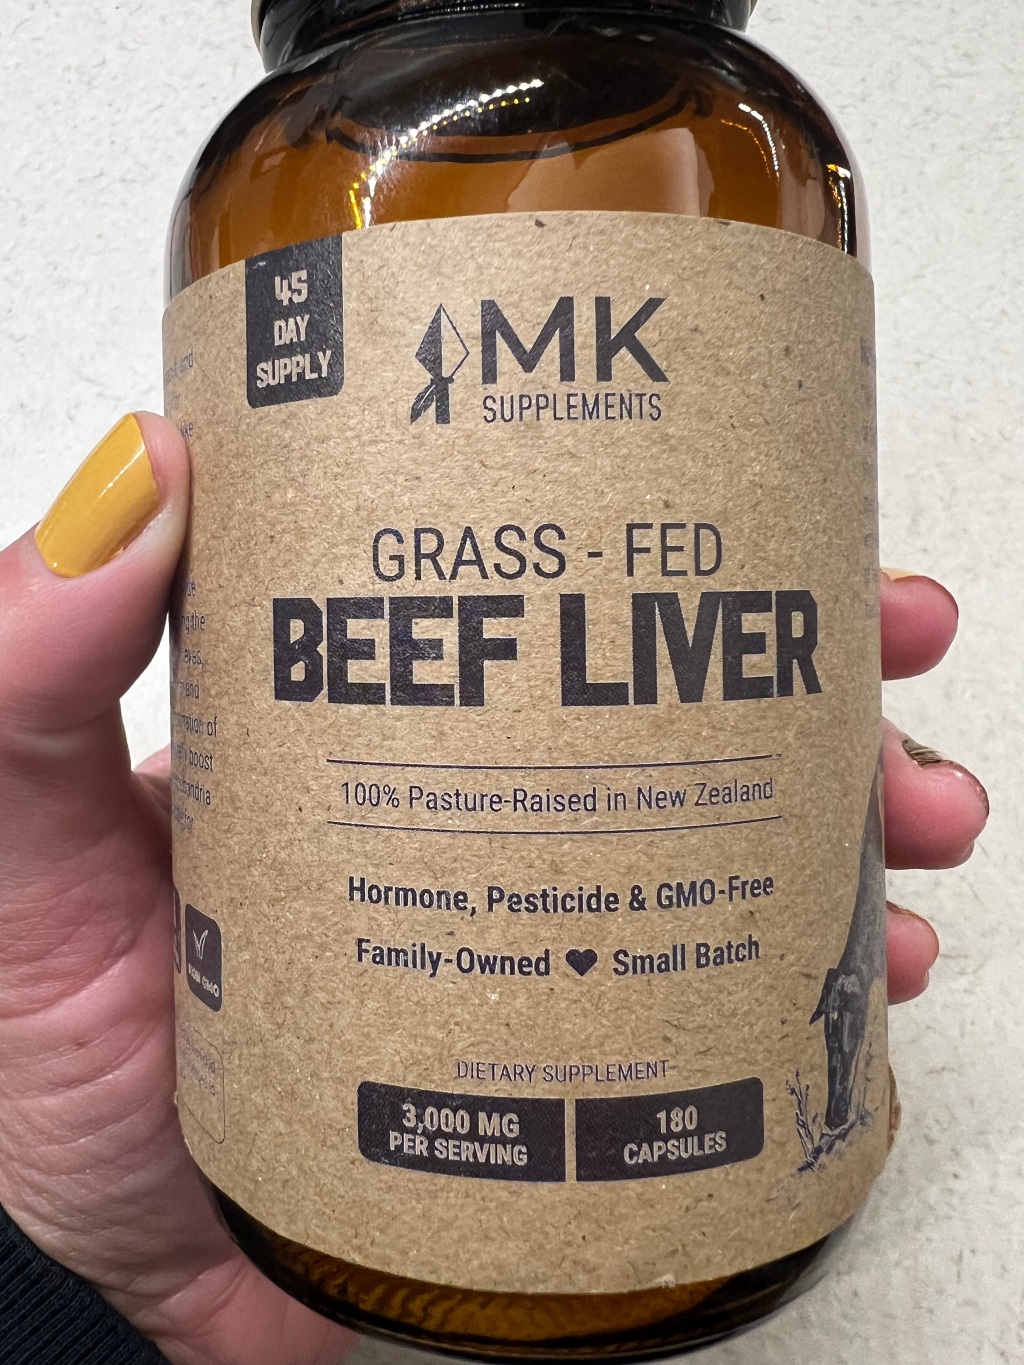 Liver is the new Multi-vitamin!